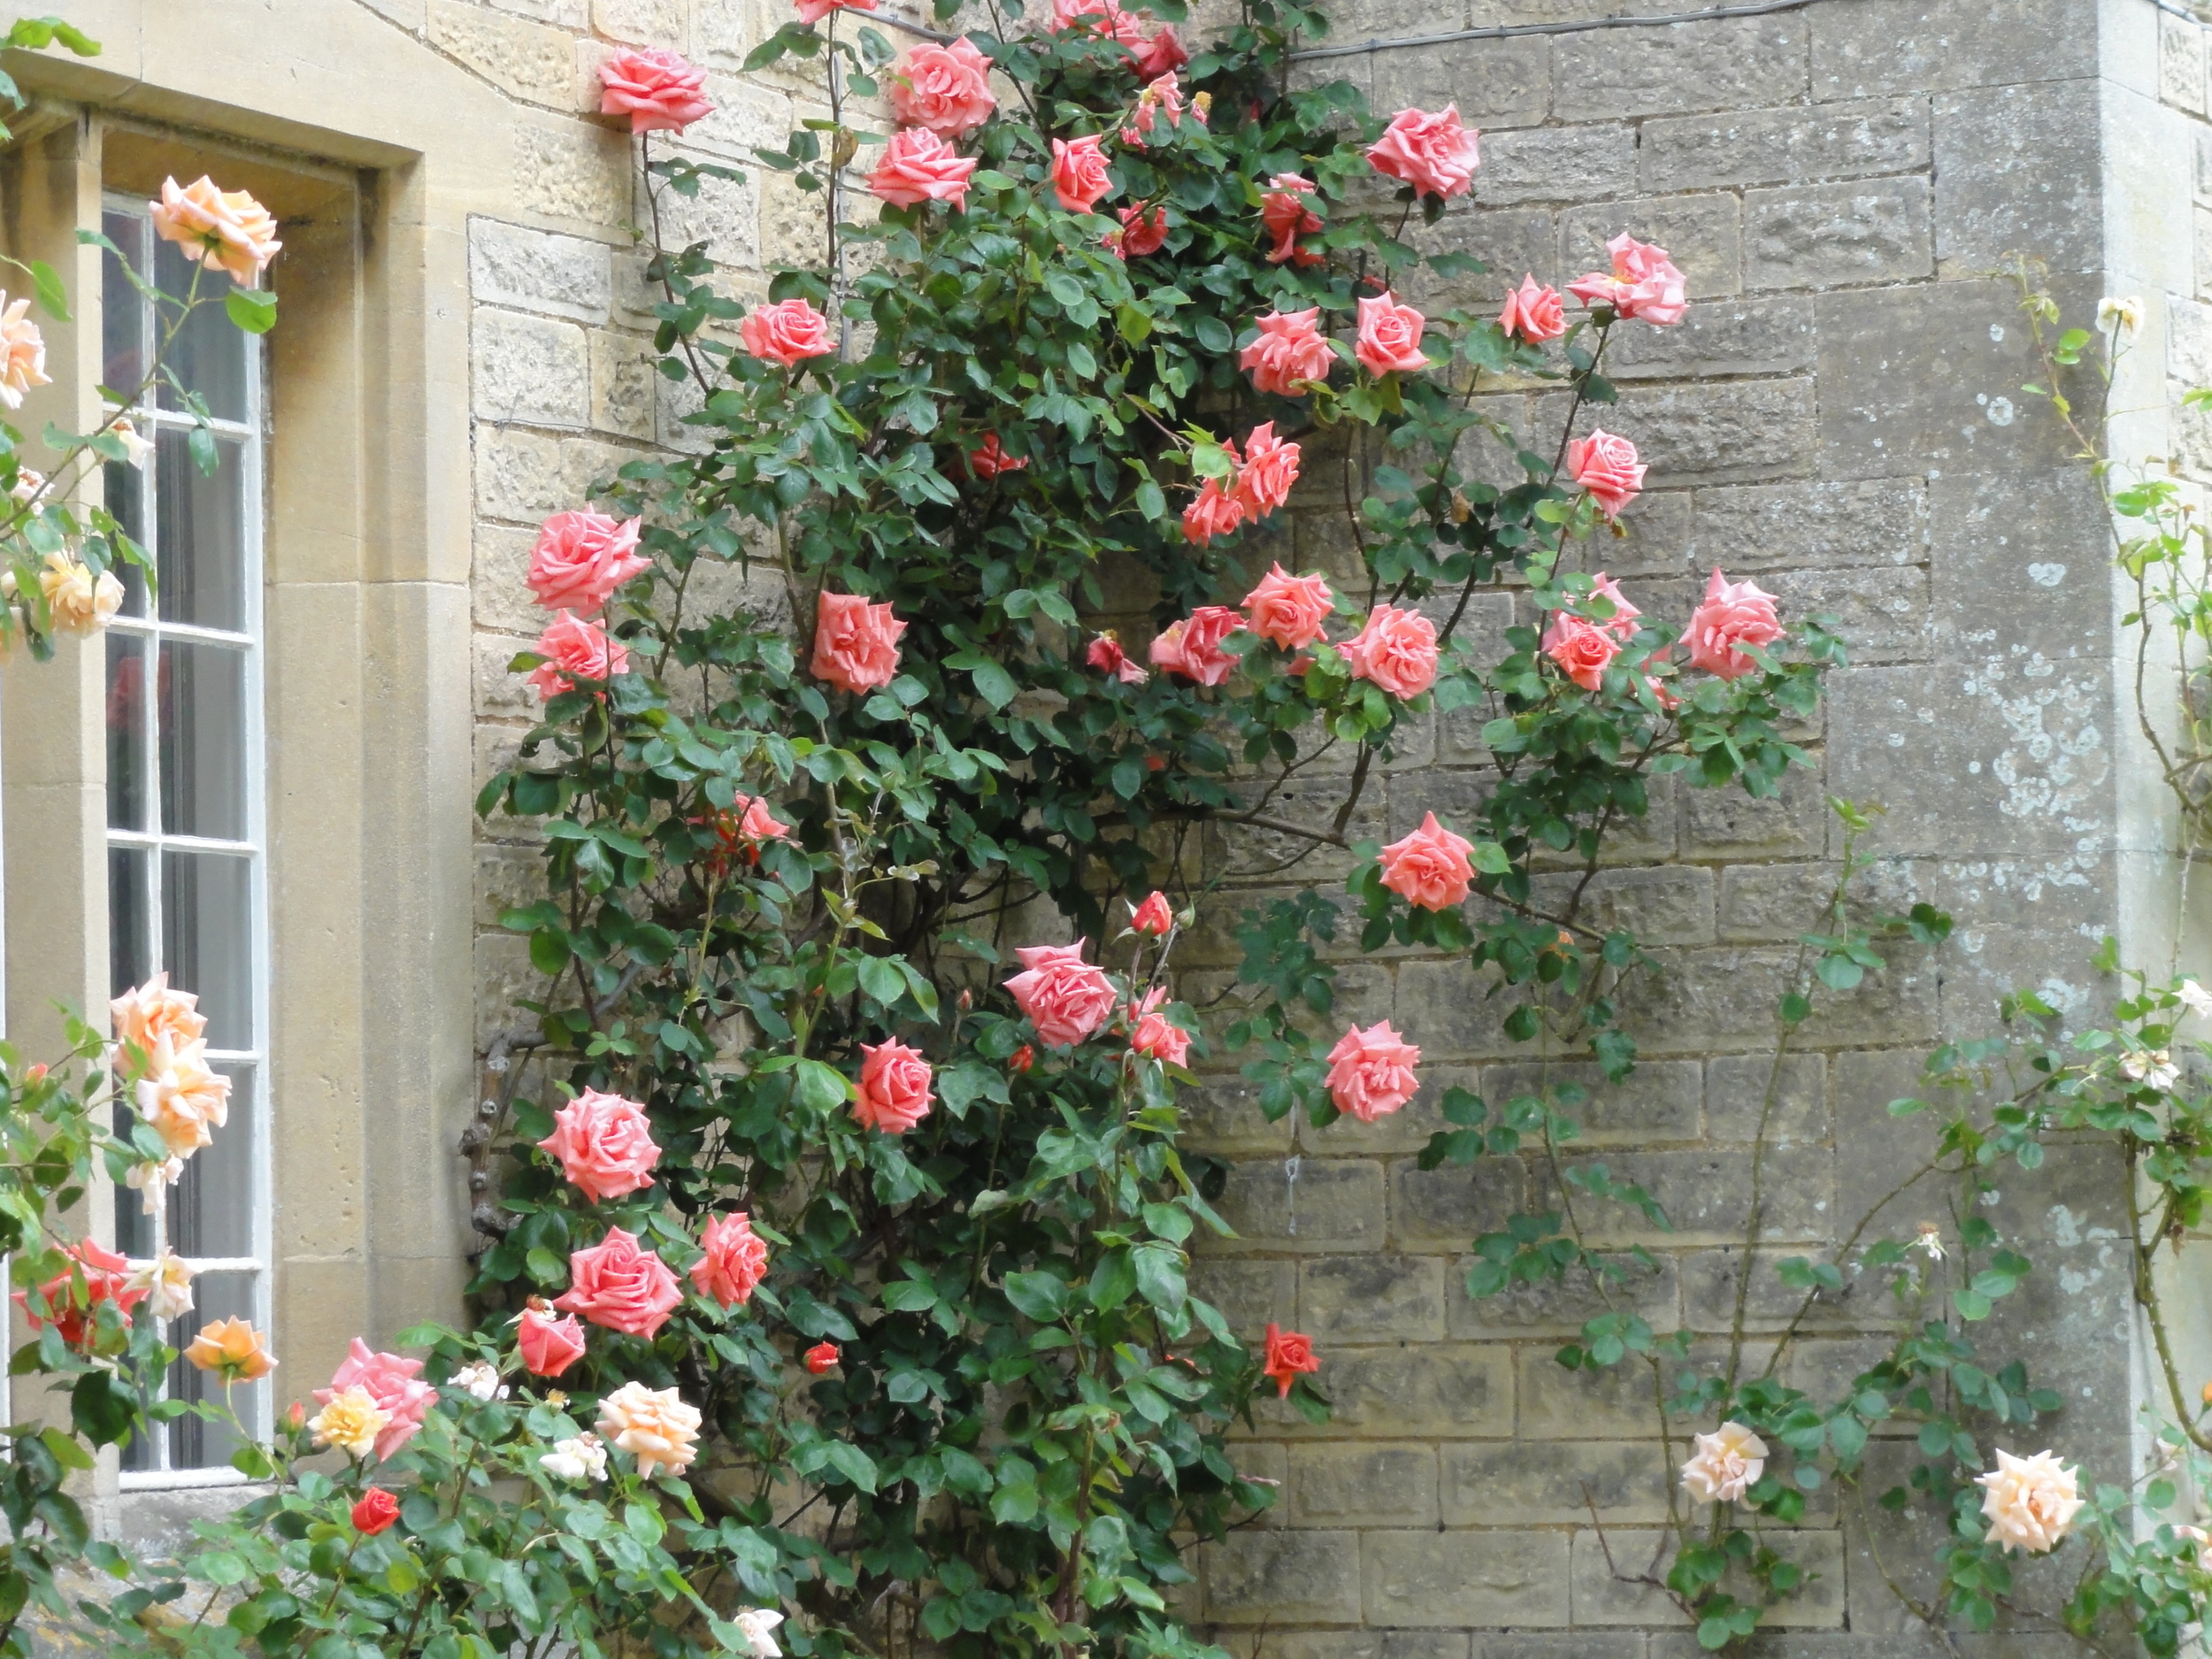 Roses outside The Moretons Farmhouse